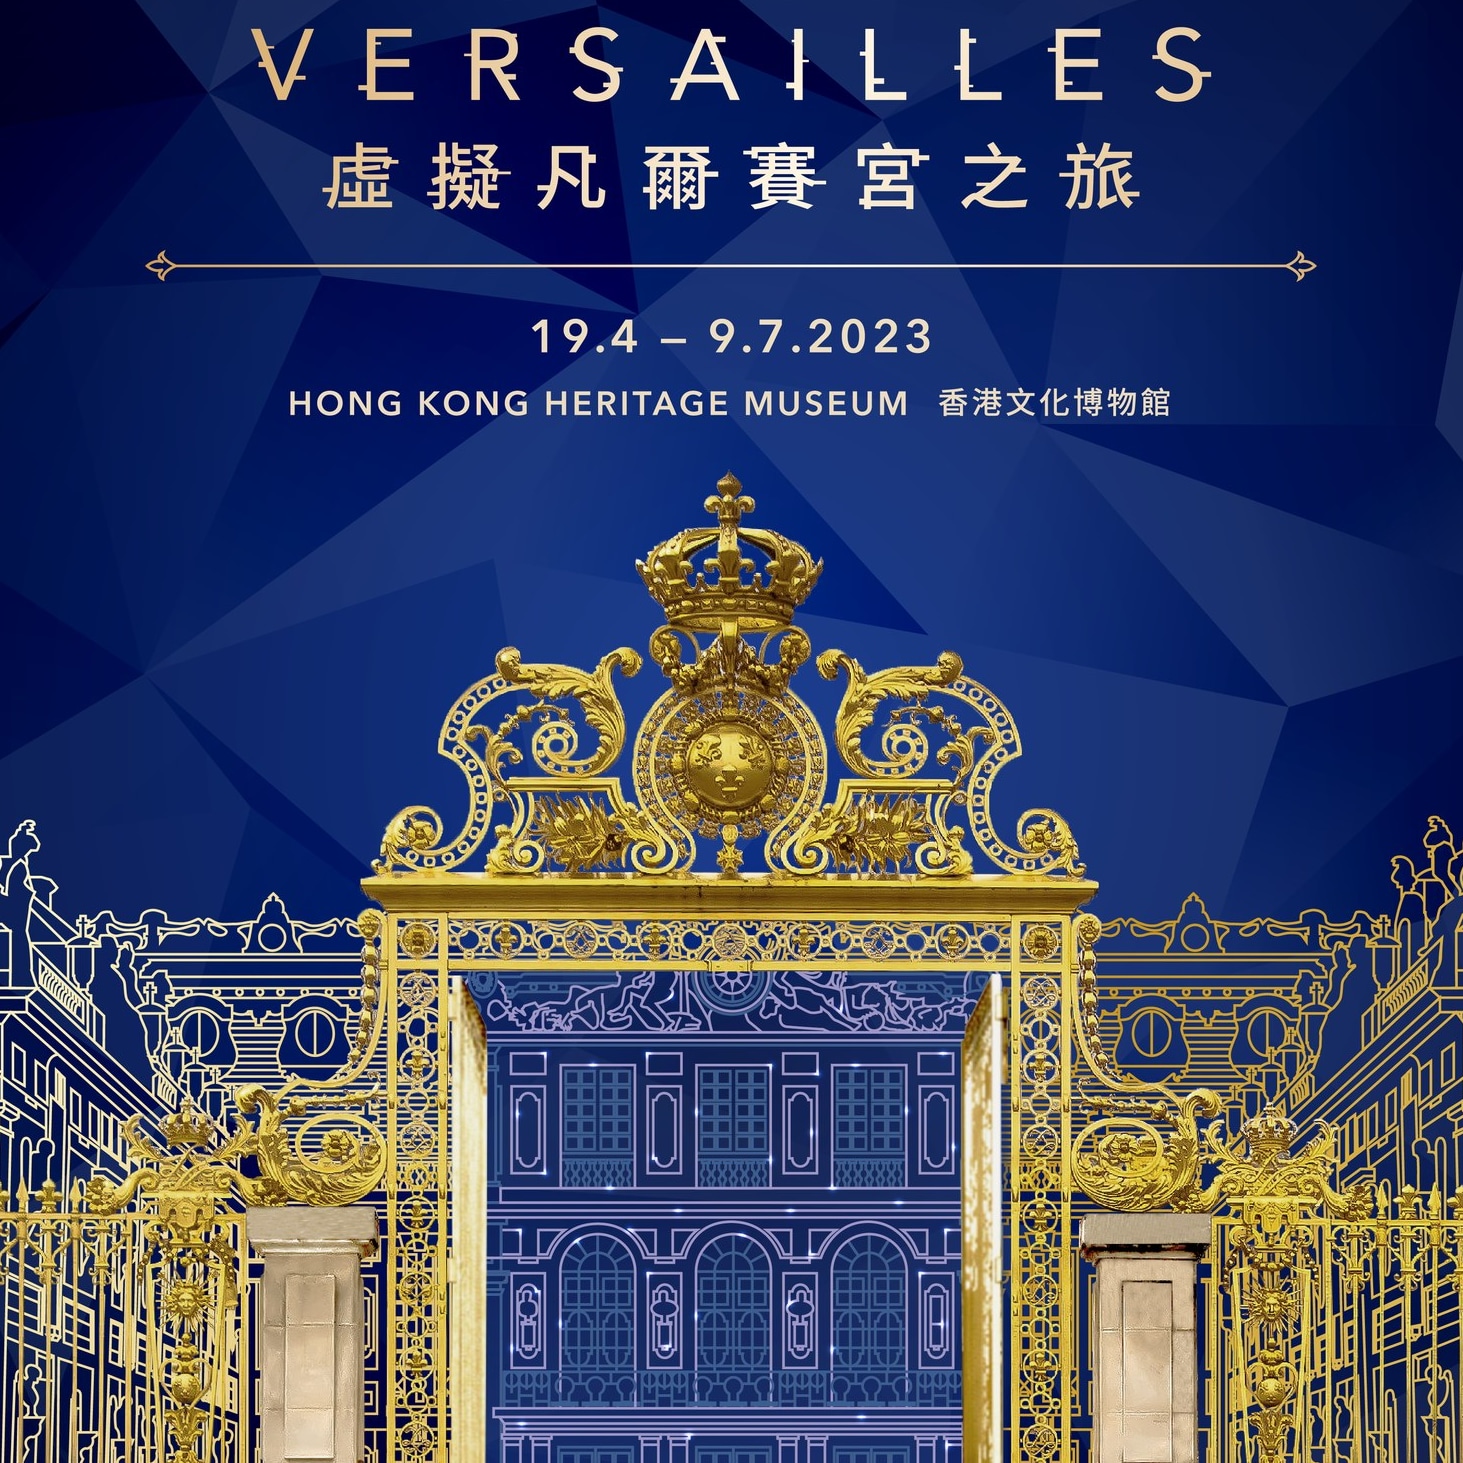 Virtually Versailles